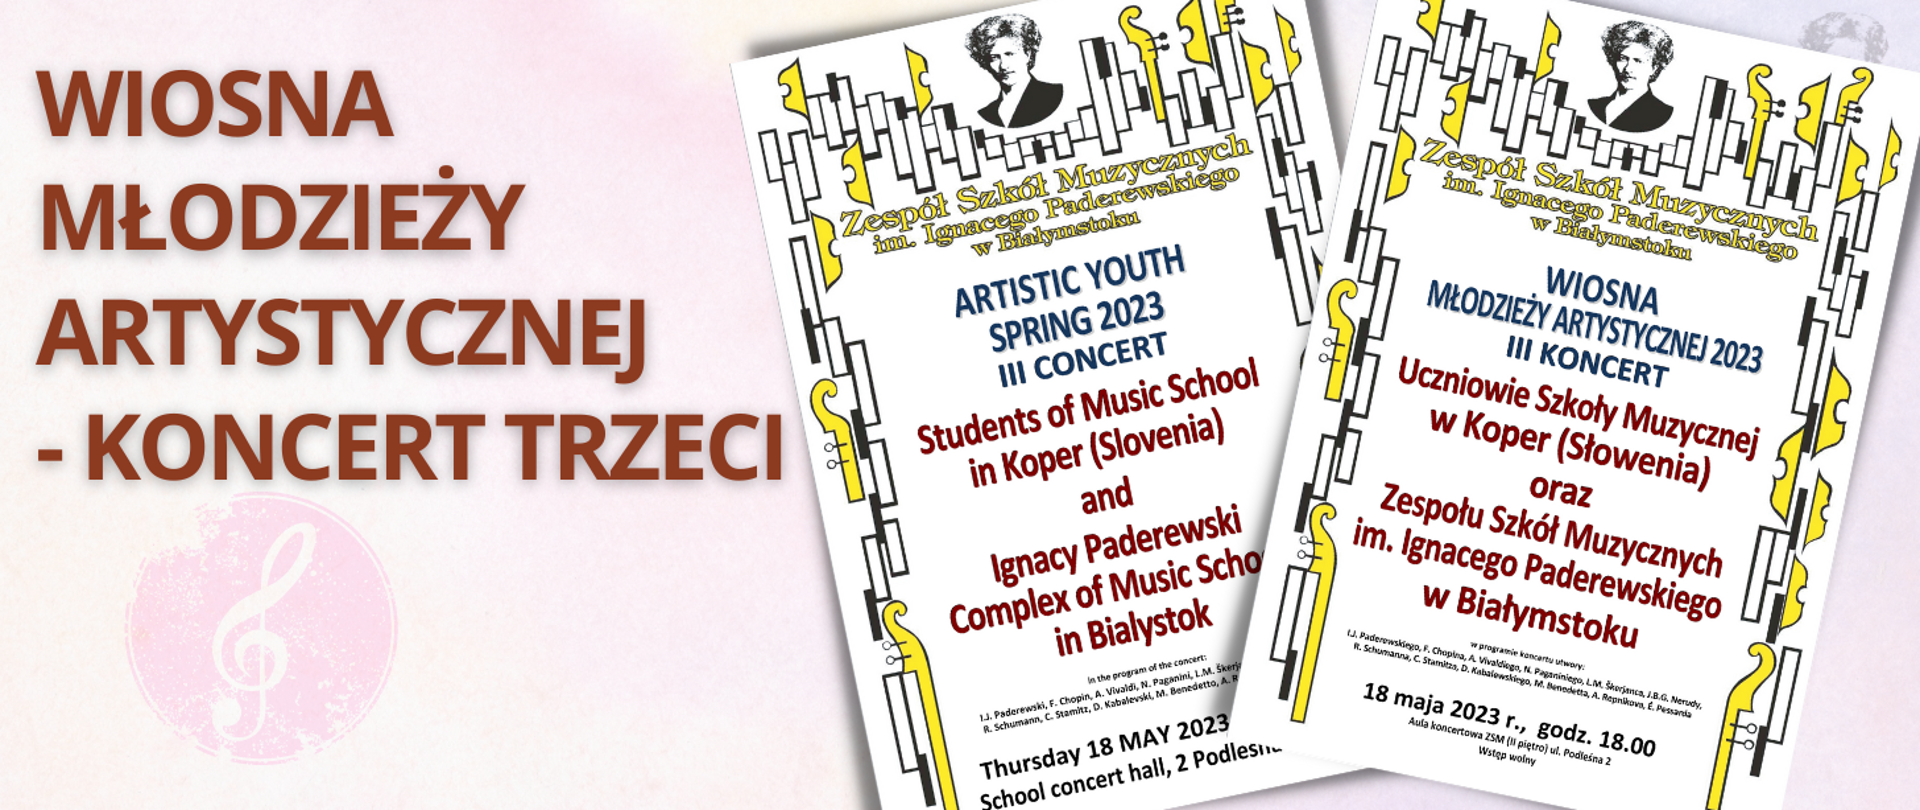 Różowo-fioletowa grafika z bordowym napisem "WIOSNA MŁODZIEŻY ARTYSTYCZNEJ - KONCERT DRUGI", po prawej stronie miniatury plakatów zapraszających na koncert w języku polskim i angielskim.